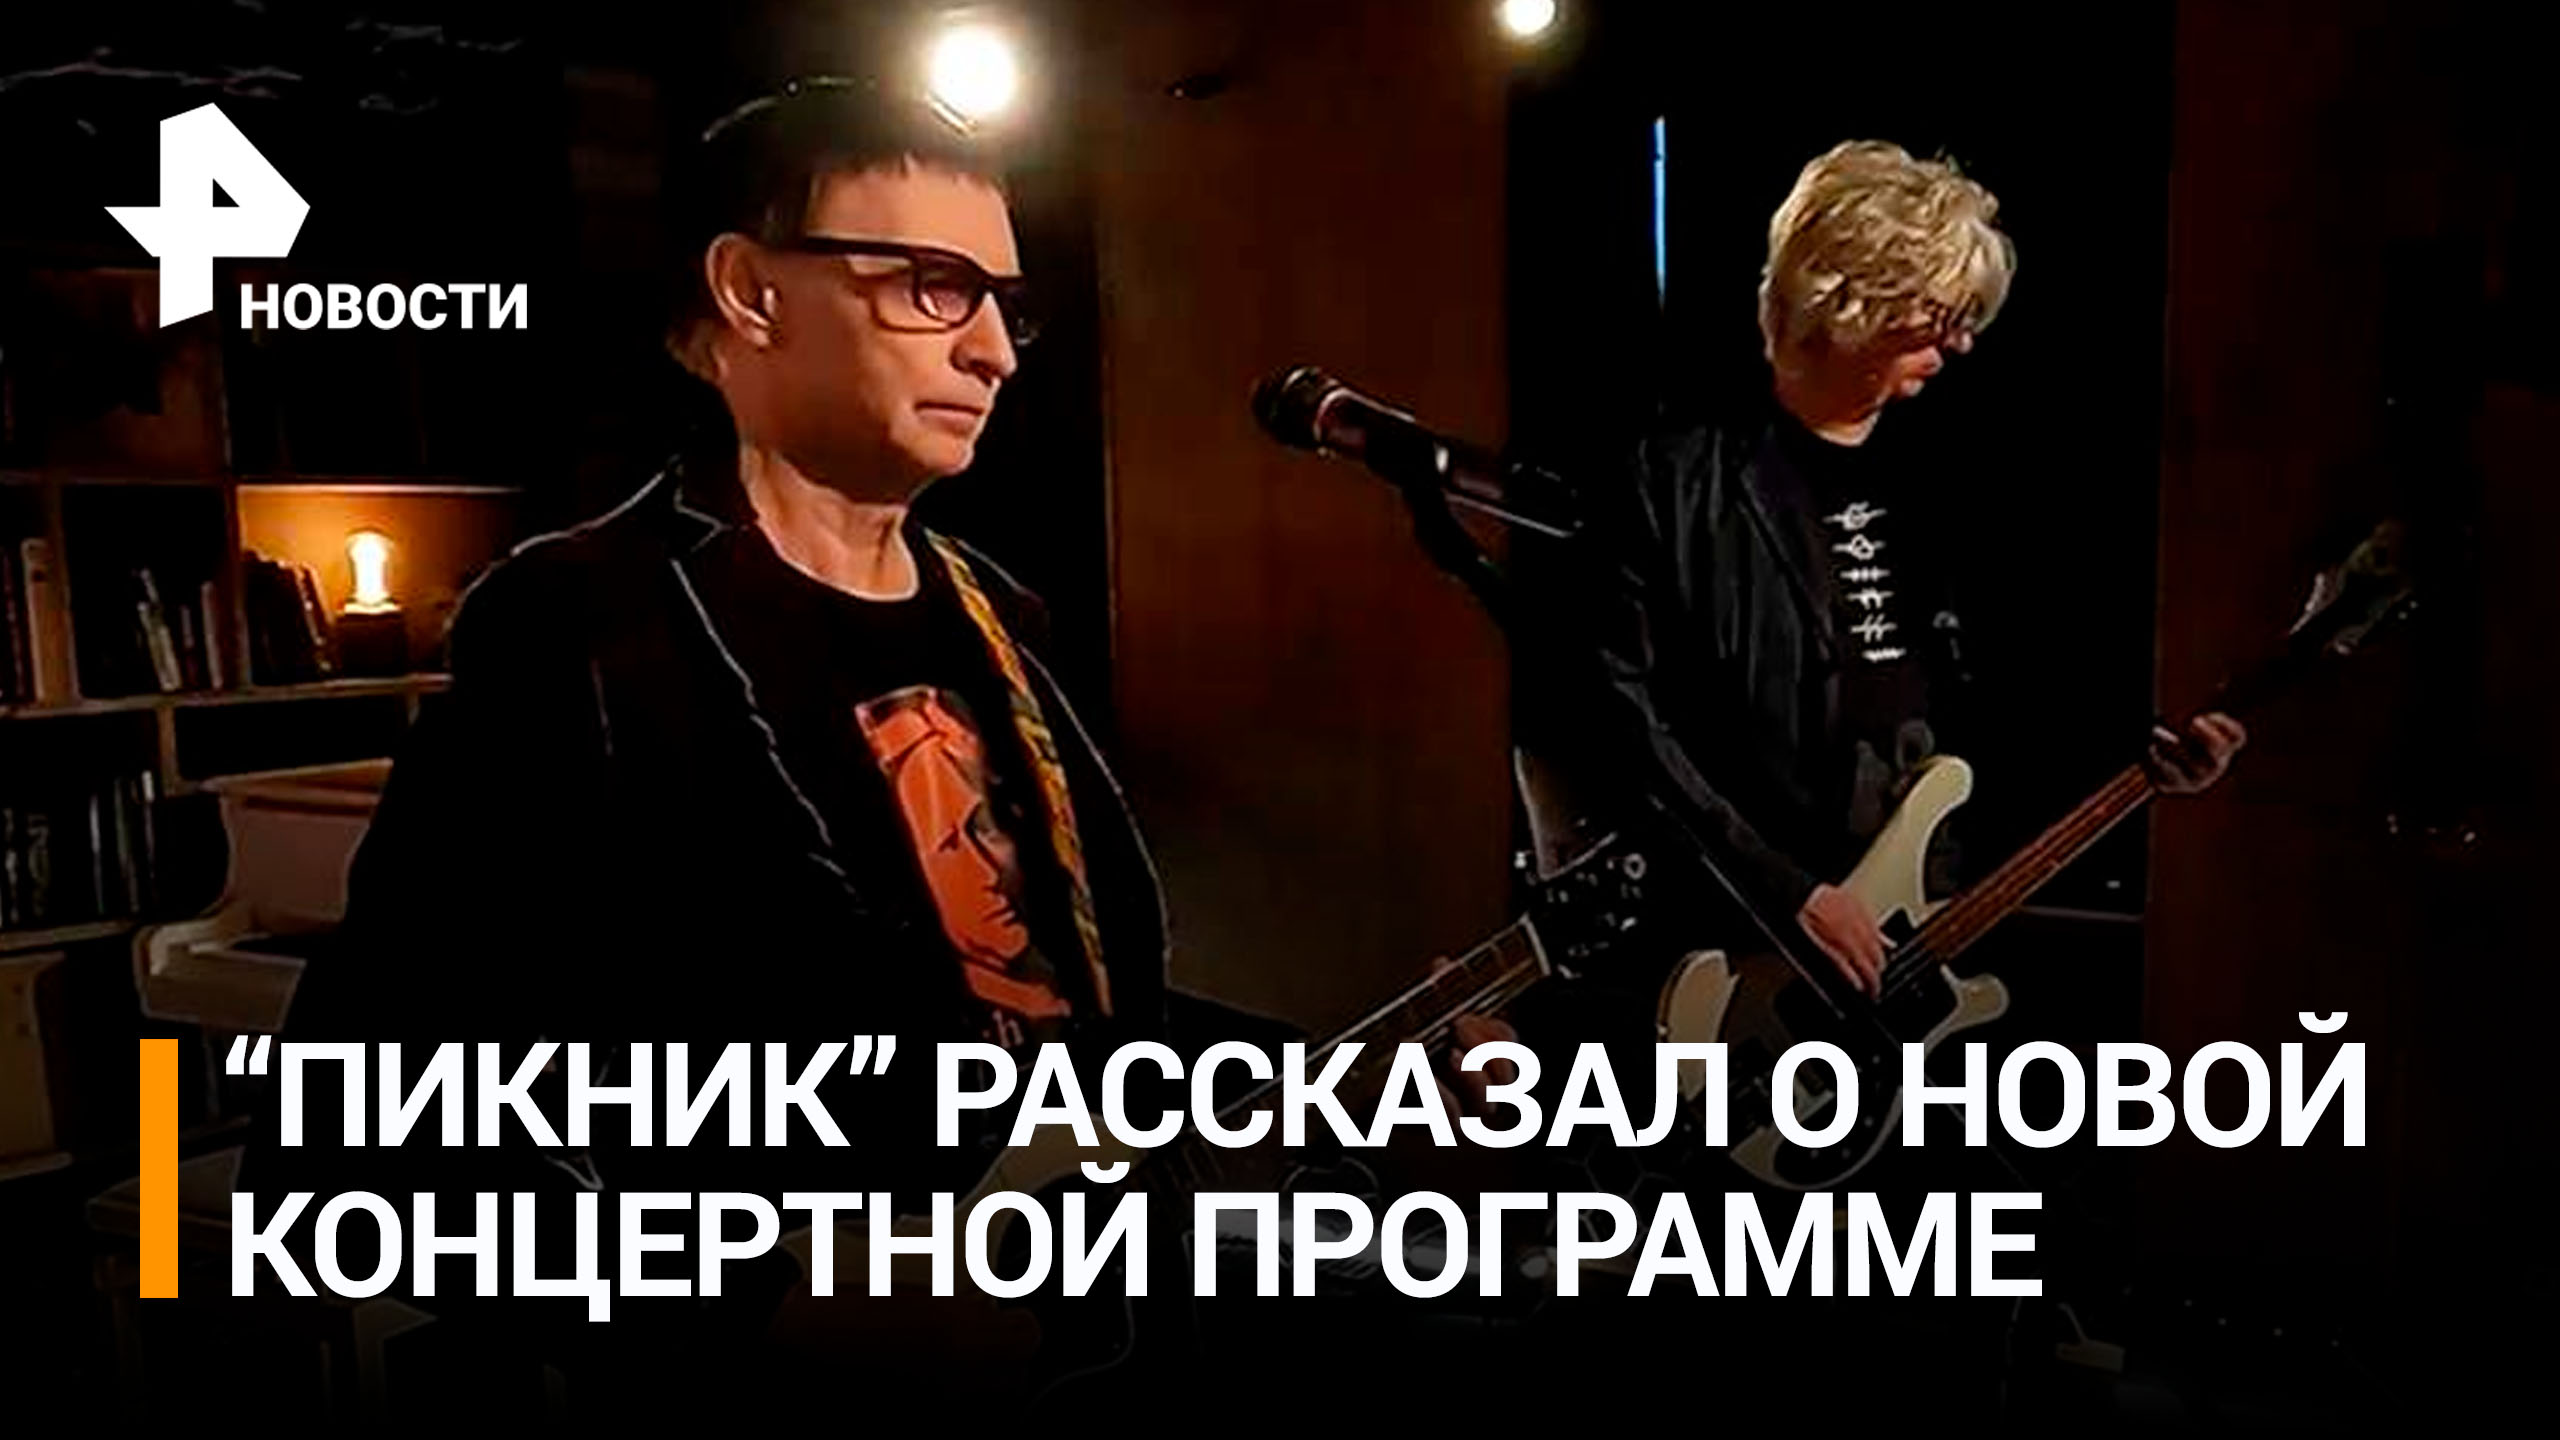 Музыканты группы "Пикник" рассказали, что покажут в новой концертной программе / РЕН Новости